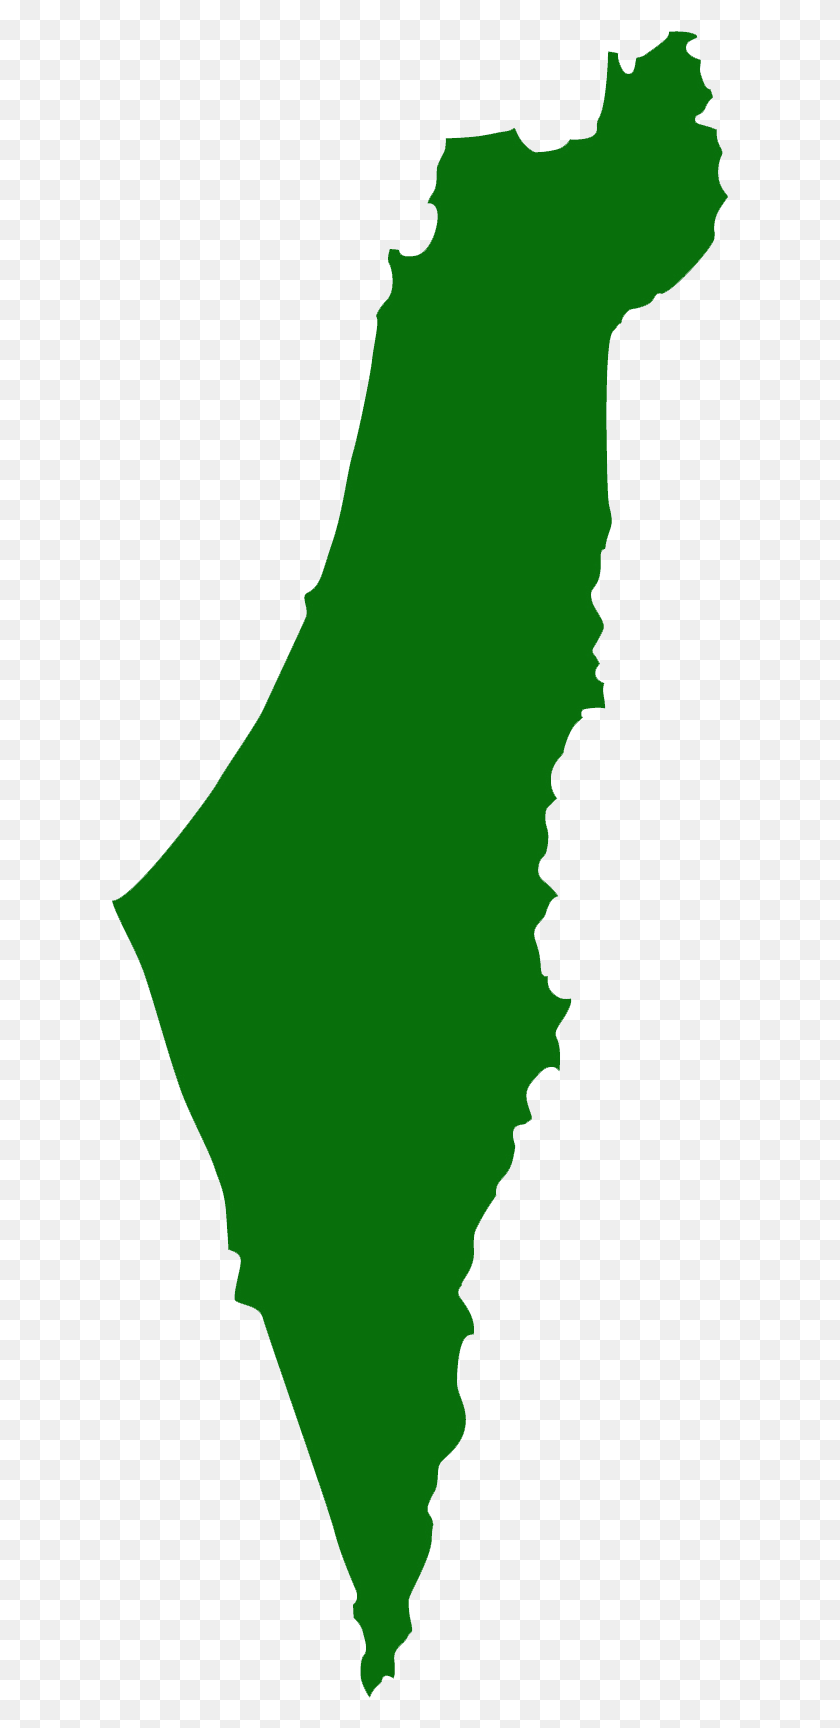 619x1668 Descargar Png La Aceptación A Un Programa De Ulpan Residencial En El Mapa De Israel Png Transparente, Verde, Texto, Persona Hd Png